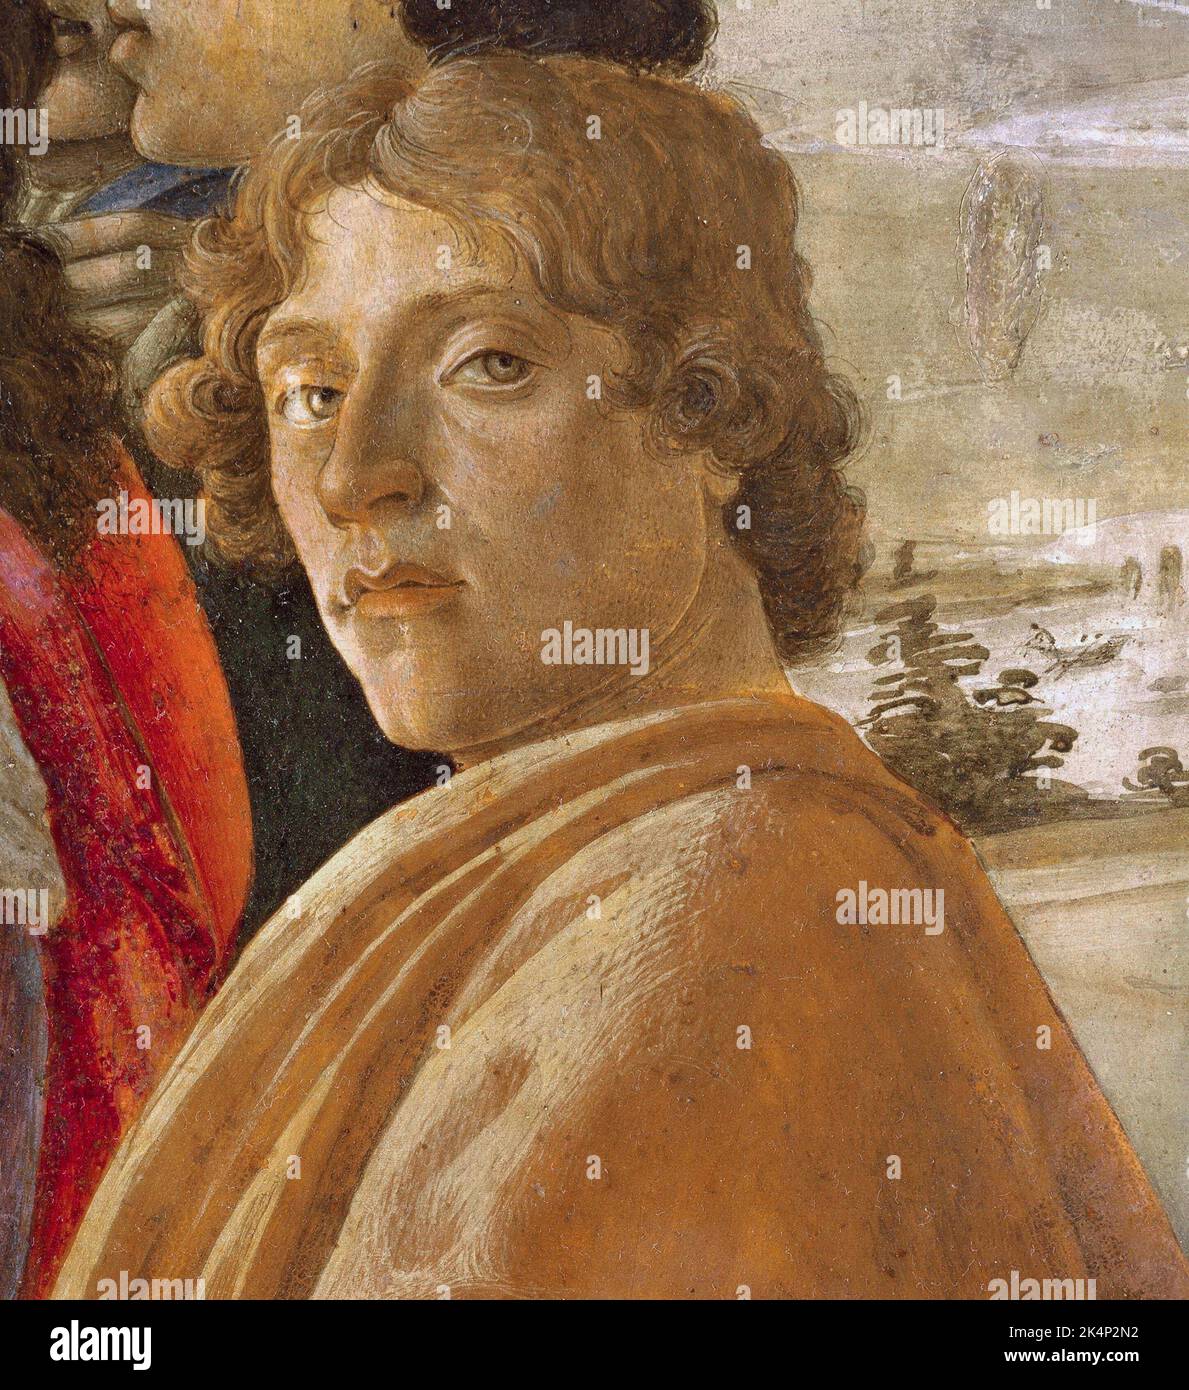 Botticelli, Alessandro di Mariano di Vanni Filipepi (c. 1445 – 1510), connue sous le nom de Sandro Botticelli, peintre italien du début de la Renaissance. Banque D'Images